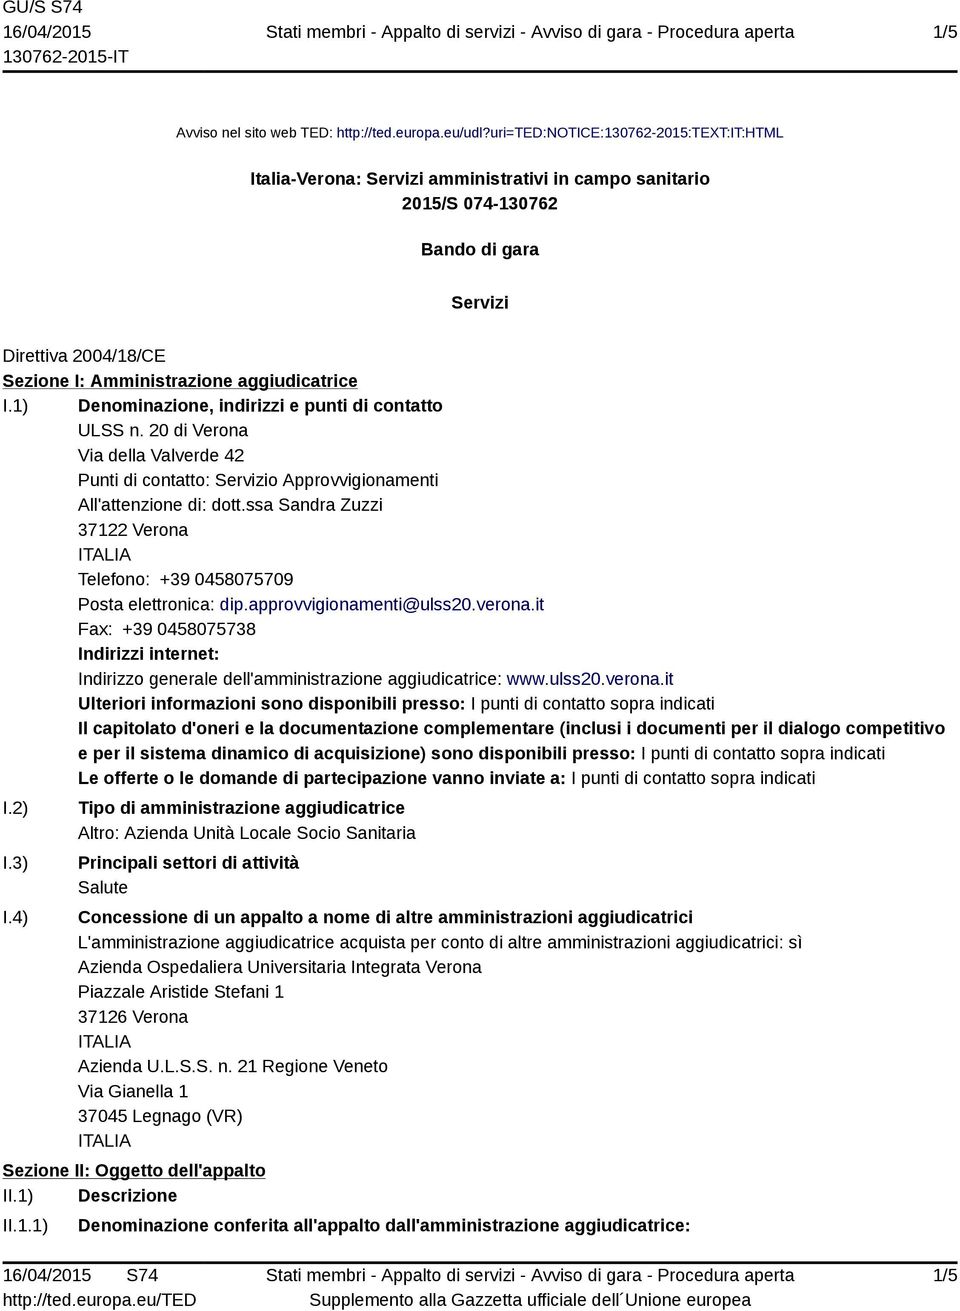 I.1) Denominazione, indirizzi e punti di contatto ULSS n. 20 di Verona Via della Valverde 42 Punti di contatto: Servizio Approvvigionamenti All'attenzione di: dott.